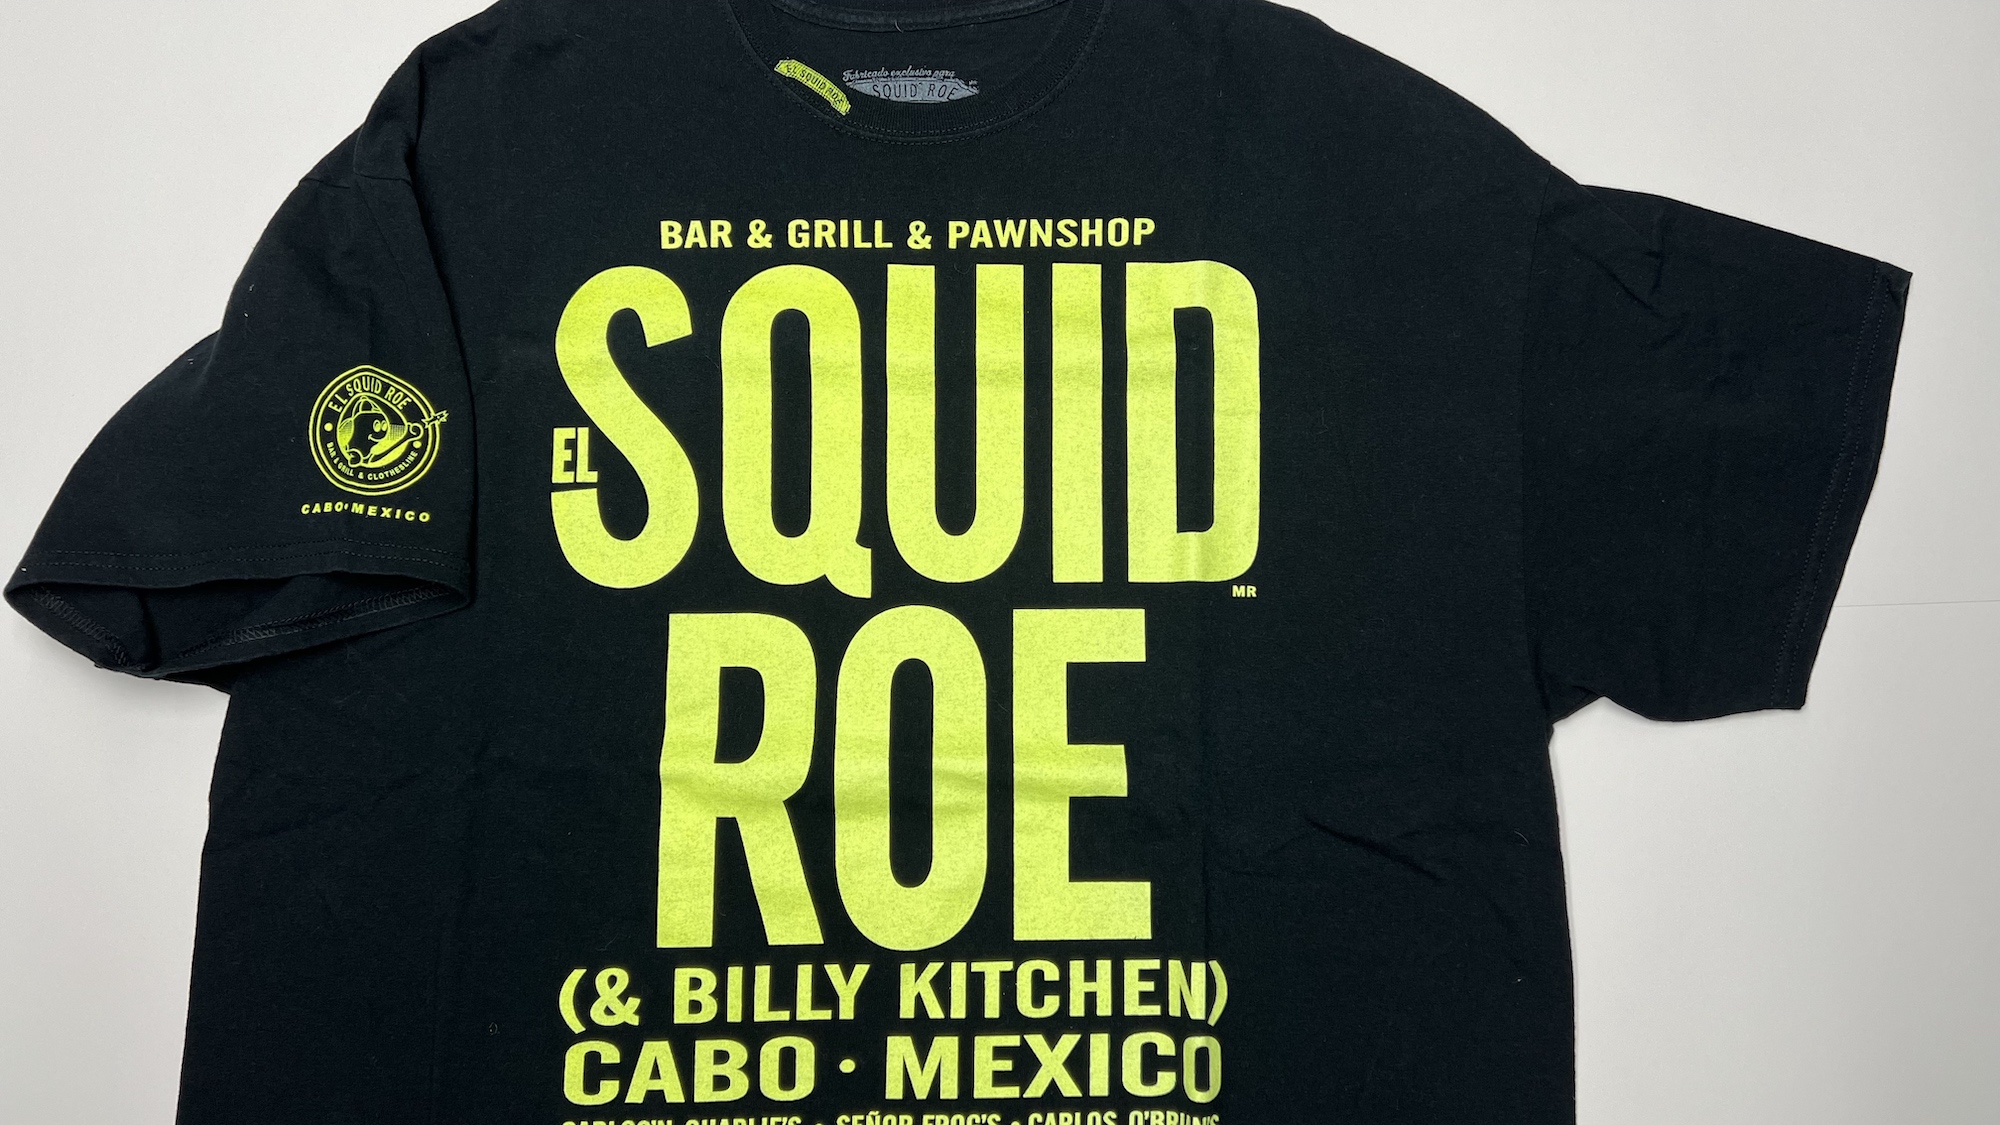 El Squid Roe T-shirt Front